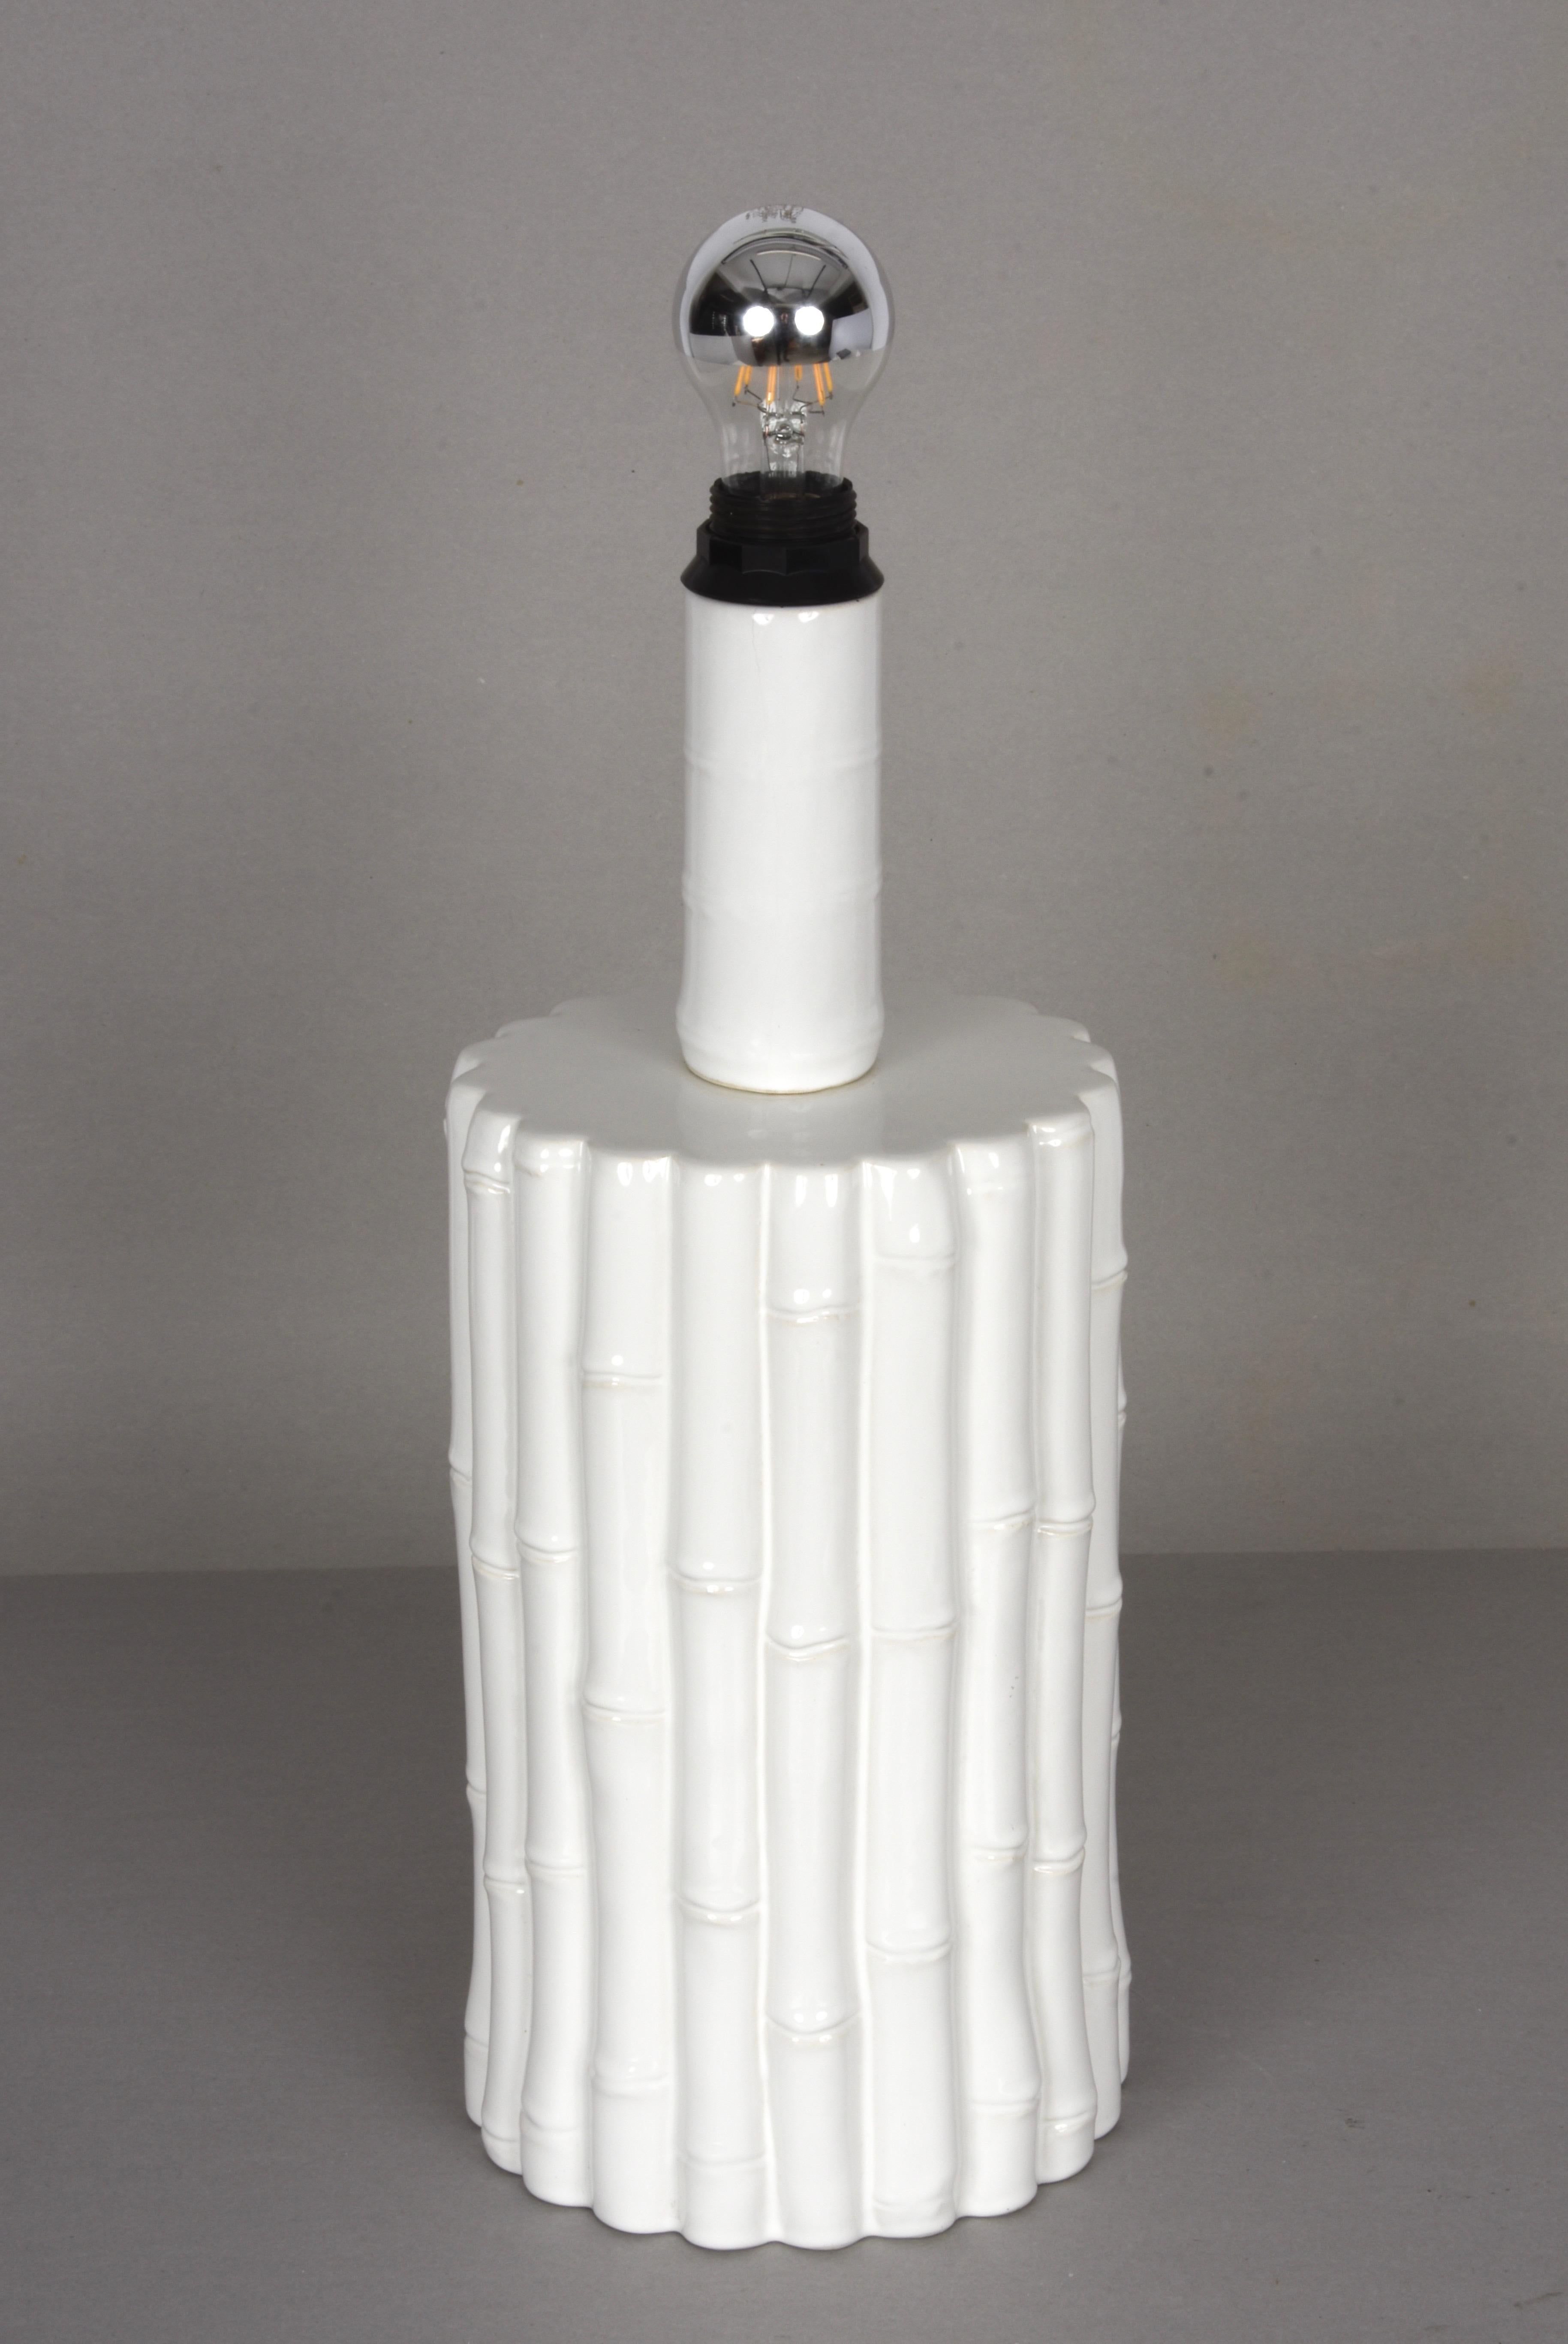 Ikonische große Keramiklampe aus der Mitte des Jahrhunderts, weiß glasiert, mit weißem Lampenschirm aus Pergament. Es wurde in den 1970er Jahren in Italien hergestellt und wird Tommaso Barbi zugeschrieben.

Der weiße Keramikkorpus mit seinen